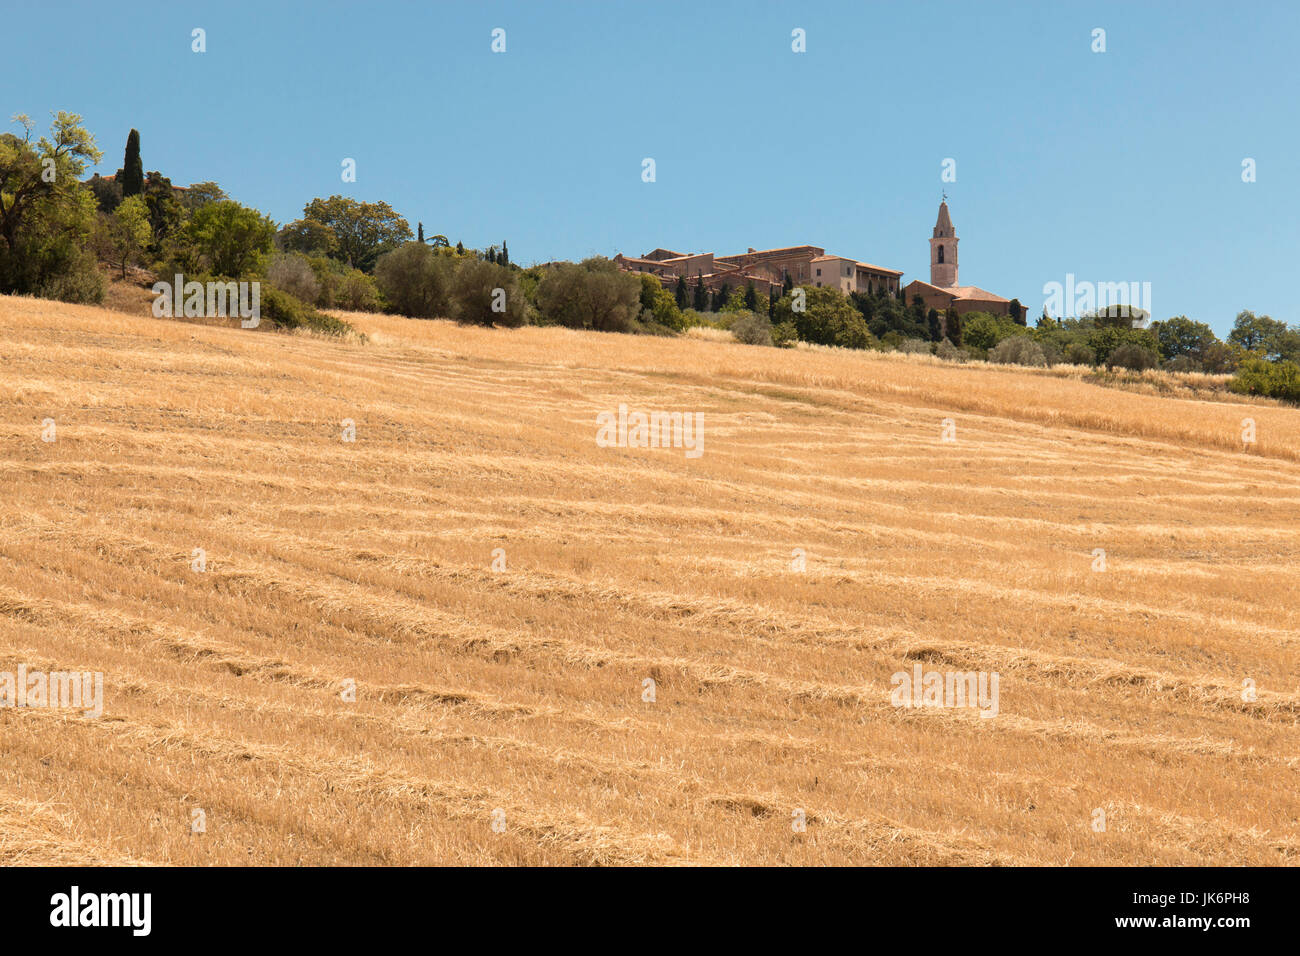 Ein Sommer Landschaft Szene über die Felder in Richtung der fernen Stadt Pienza auf einem Hügel der Val d'Orcia, Toskana, Italien Stockfoto